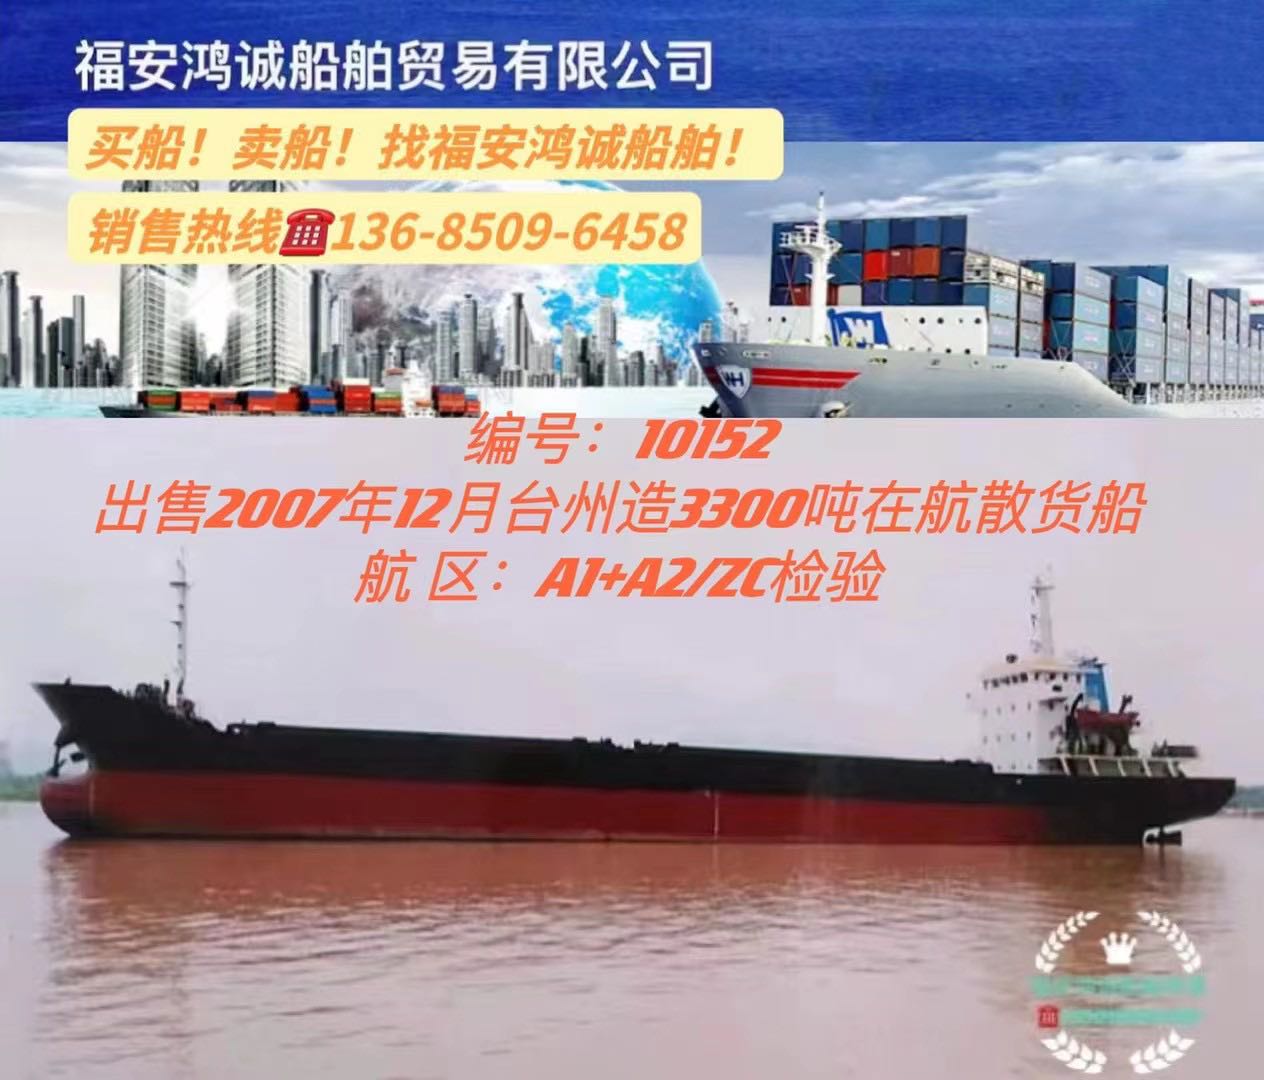 出售3300吨散货船2007年12月